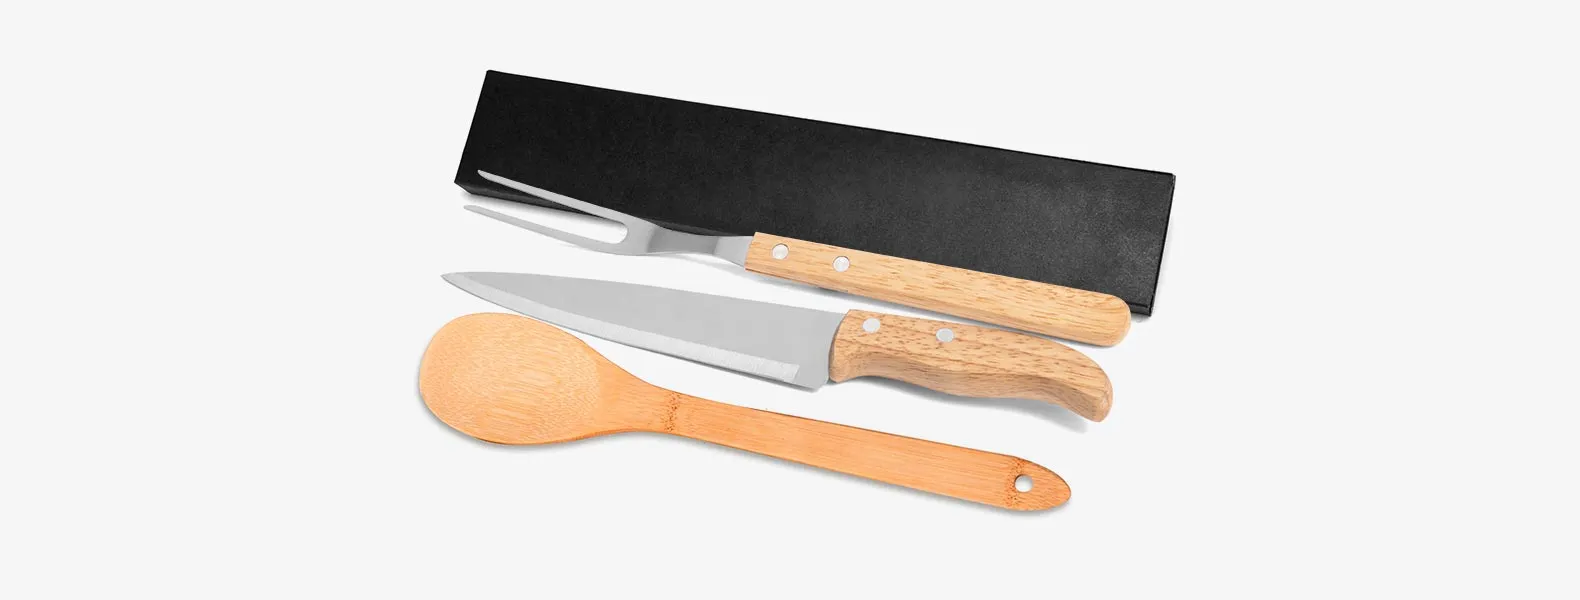 Conjunto de Faca em Madeira/Aço Inox; Acompanha faca 7'', garfo em Madeira/Inox; Colher 30cm; Caixa para presente. Como cortesia, fazemos uma gravação na lâmina da faca com os cortes do boi.